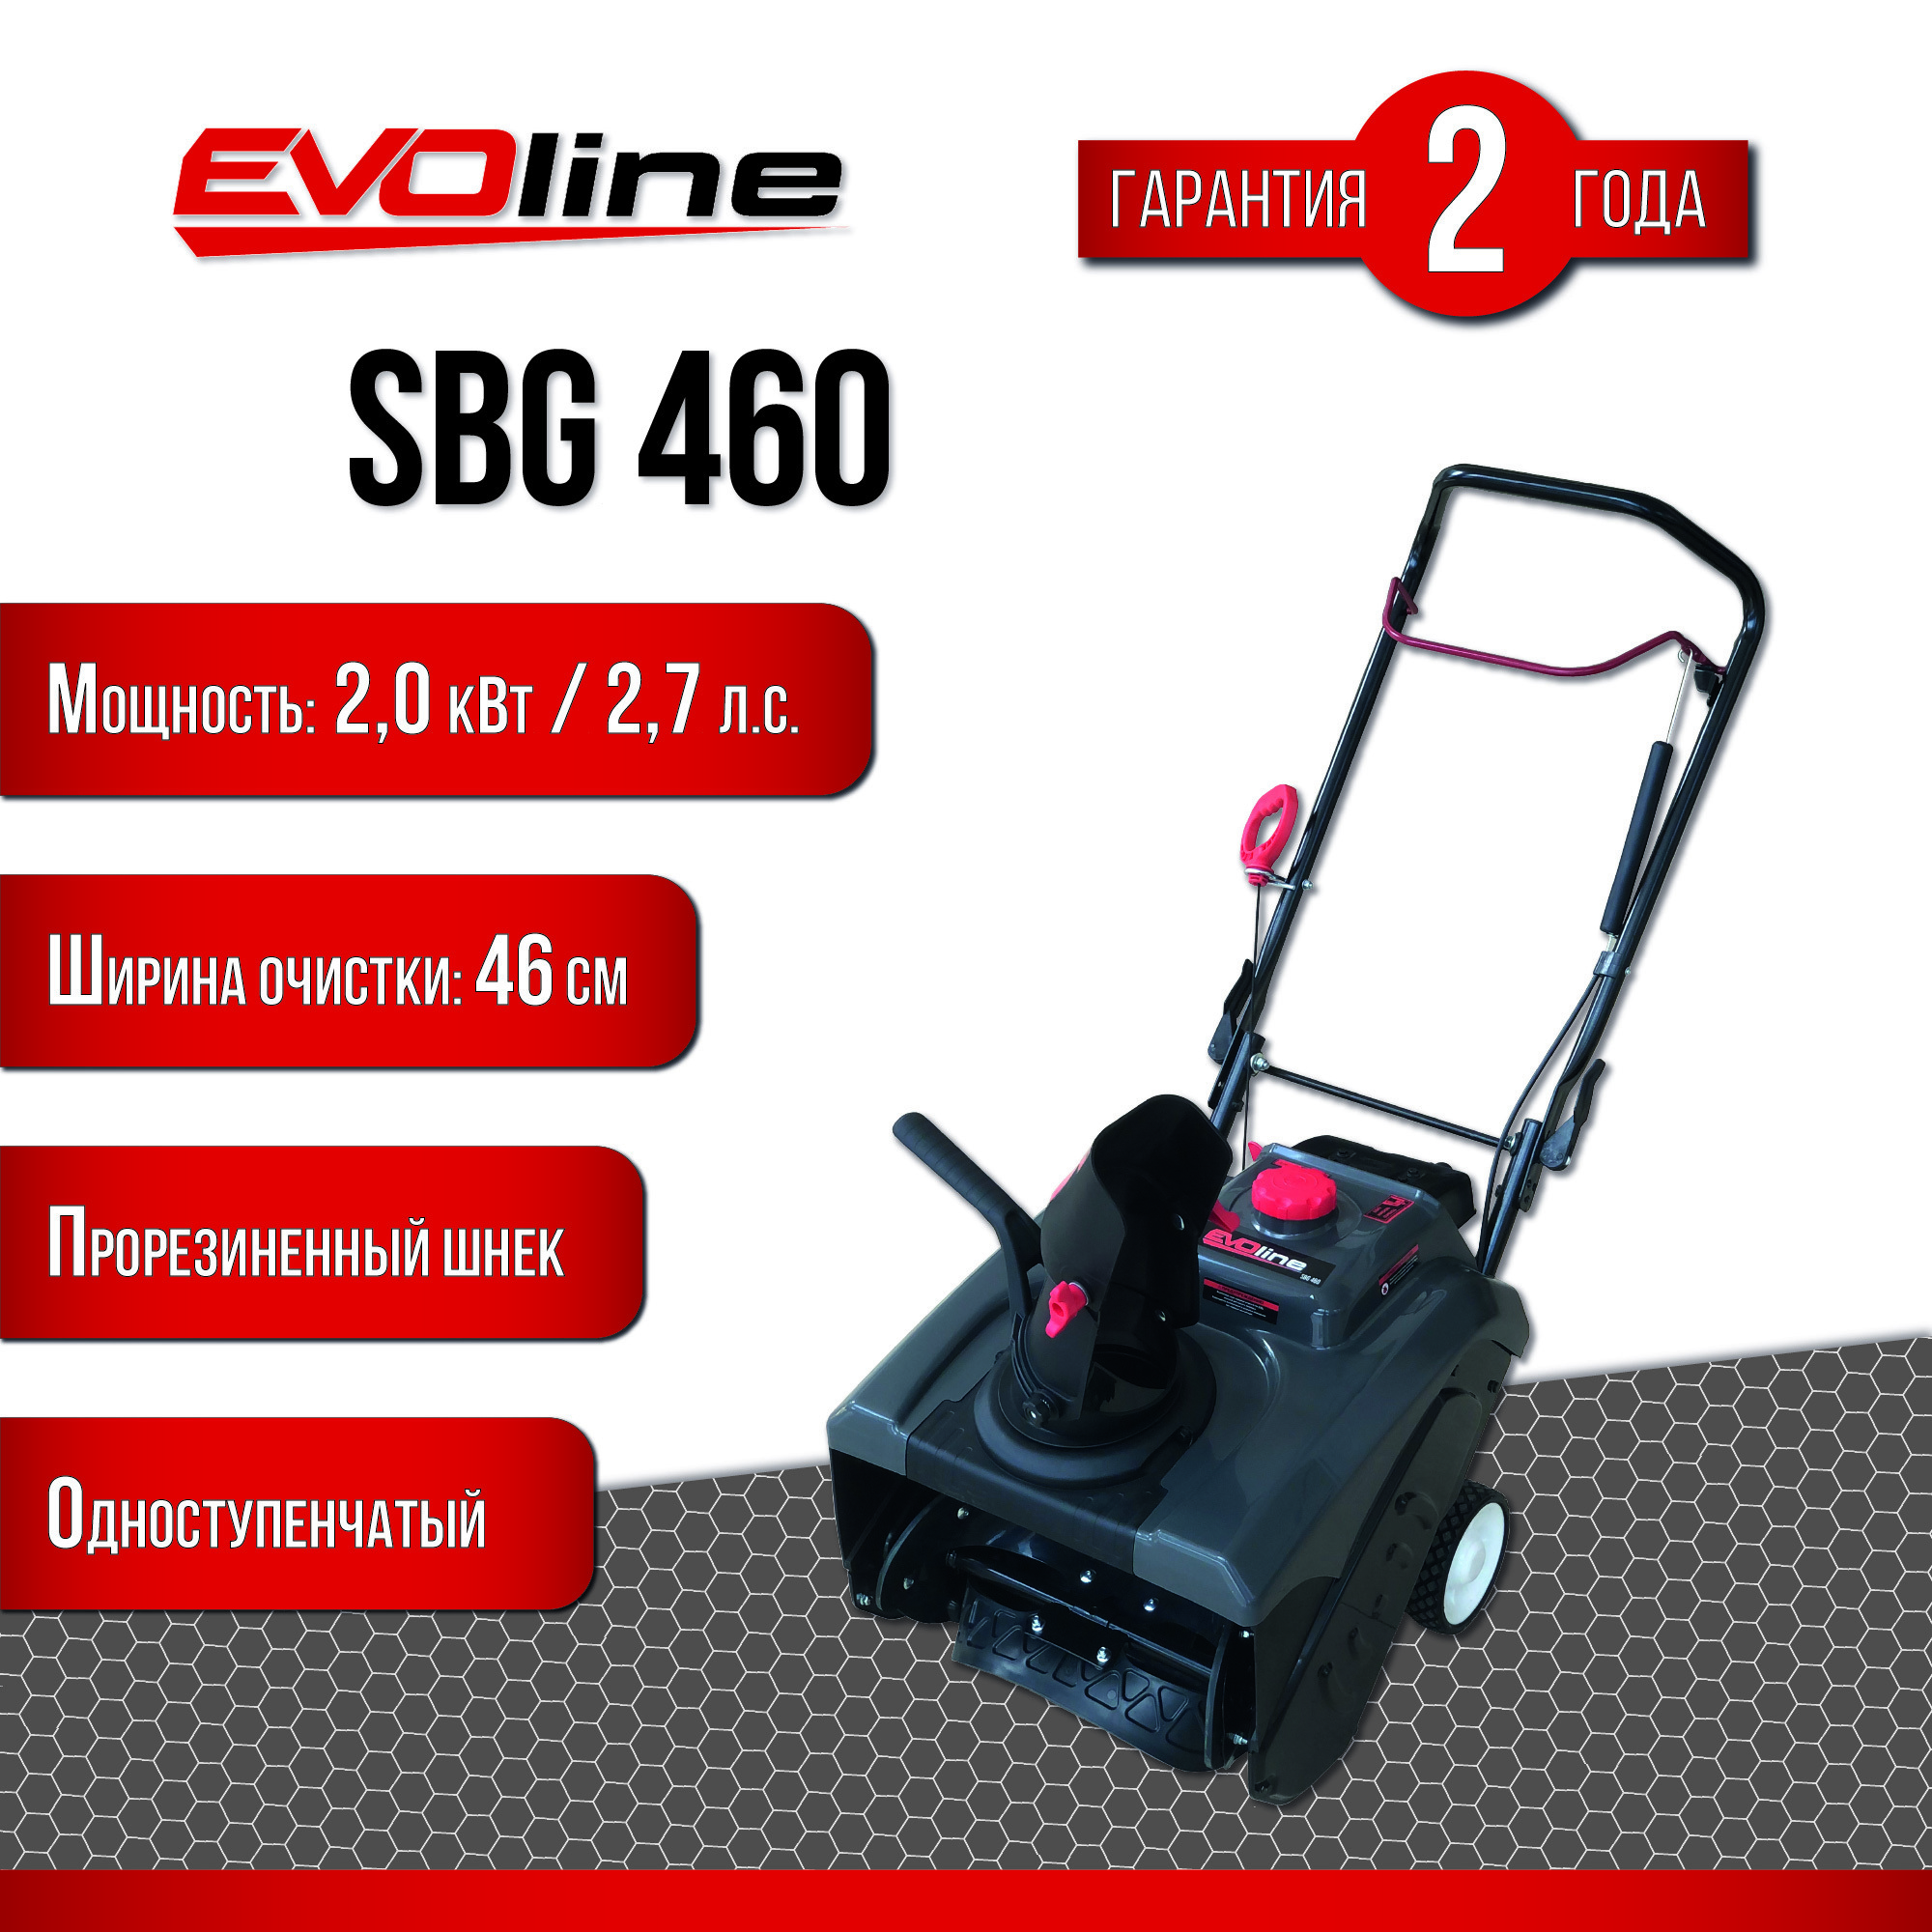 Снегоуборщик бензиновый EVOline SBG 460 46 см 2.2 л.с. по цене 49990 .